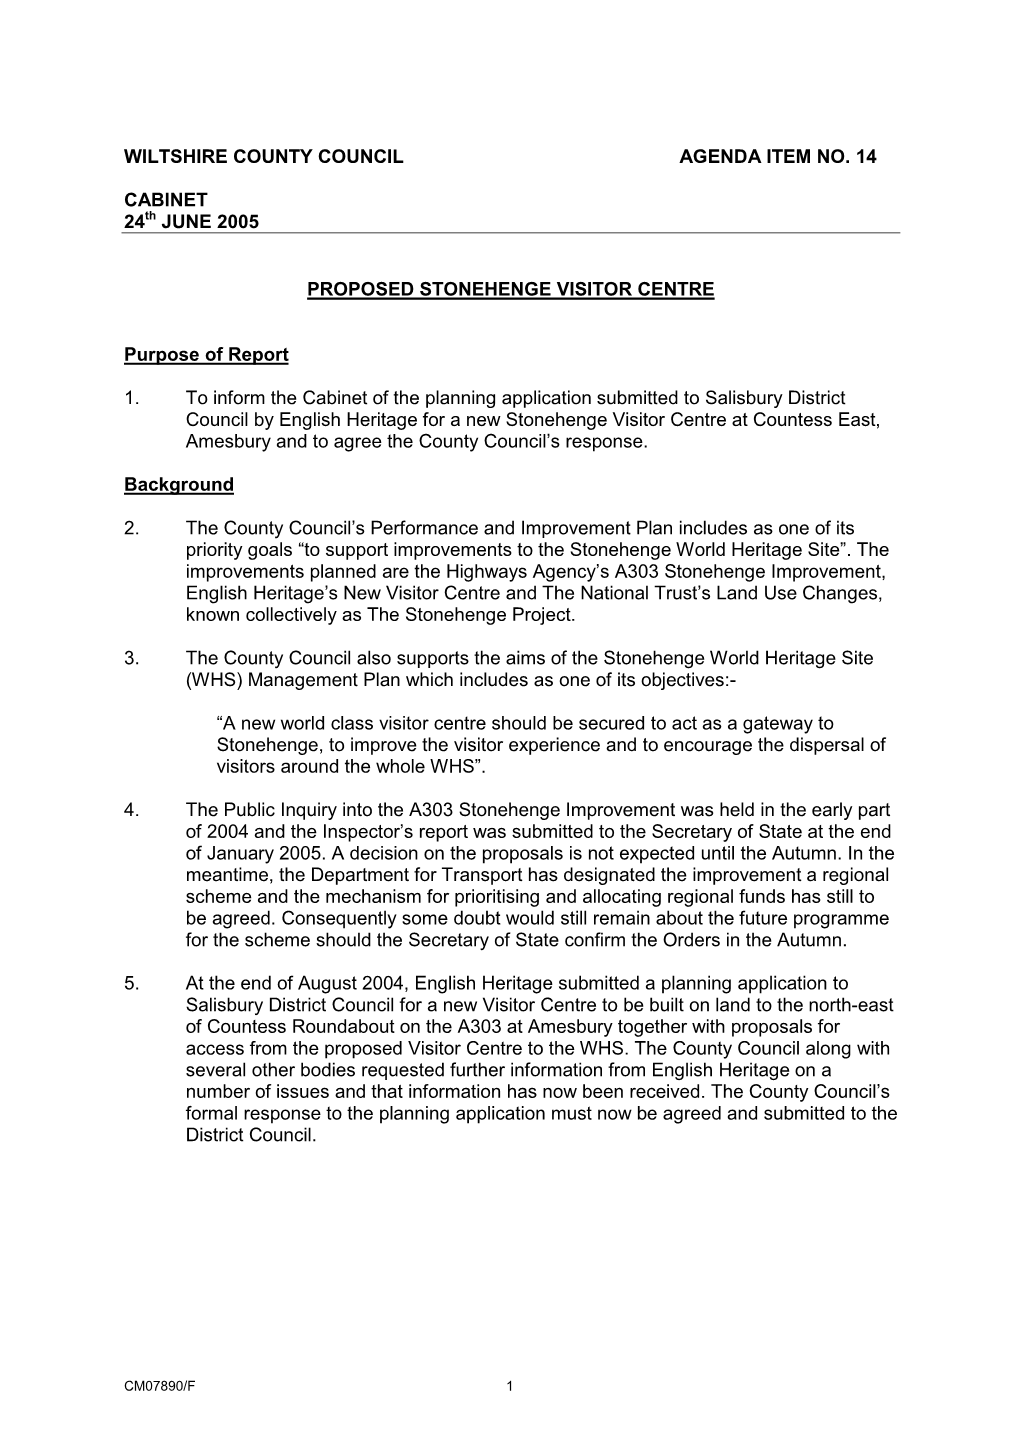 Wiltshire County Council Agenda Item No. 14 Cabinet